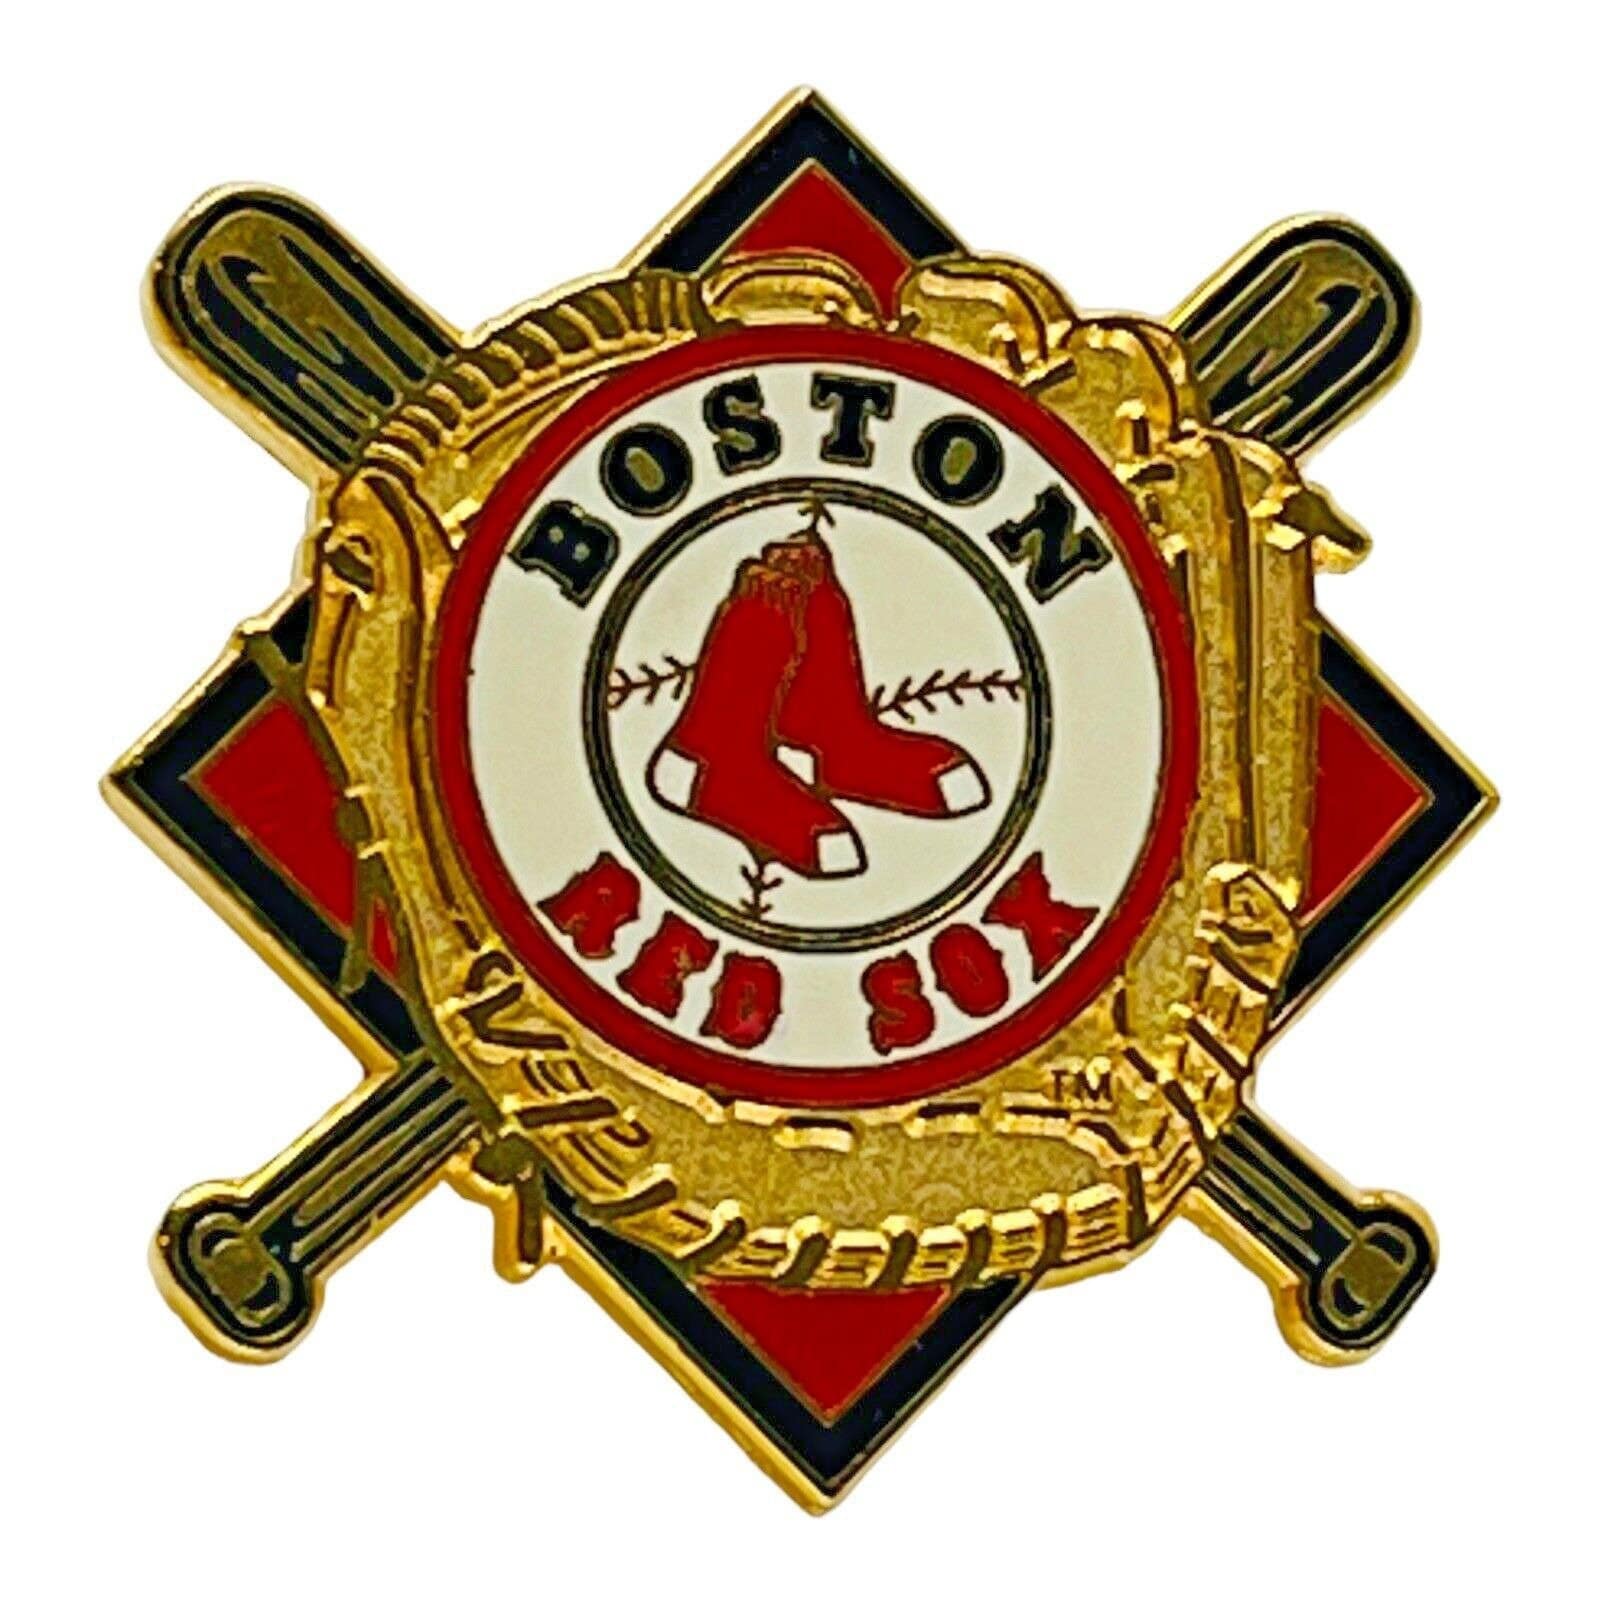 Pin on Baseball Red Sox